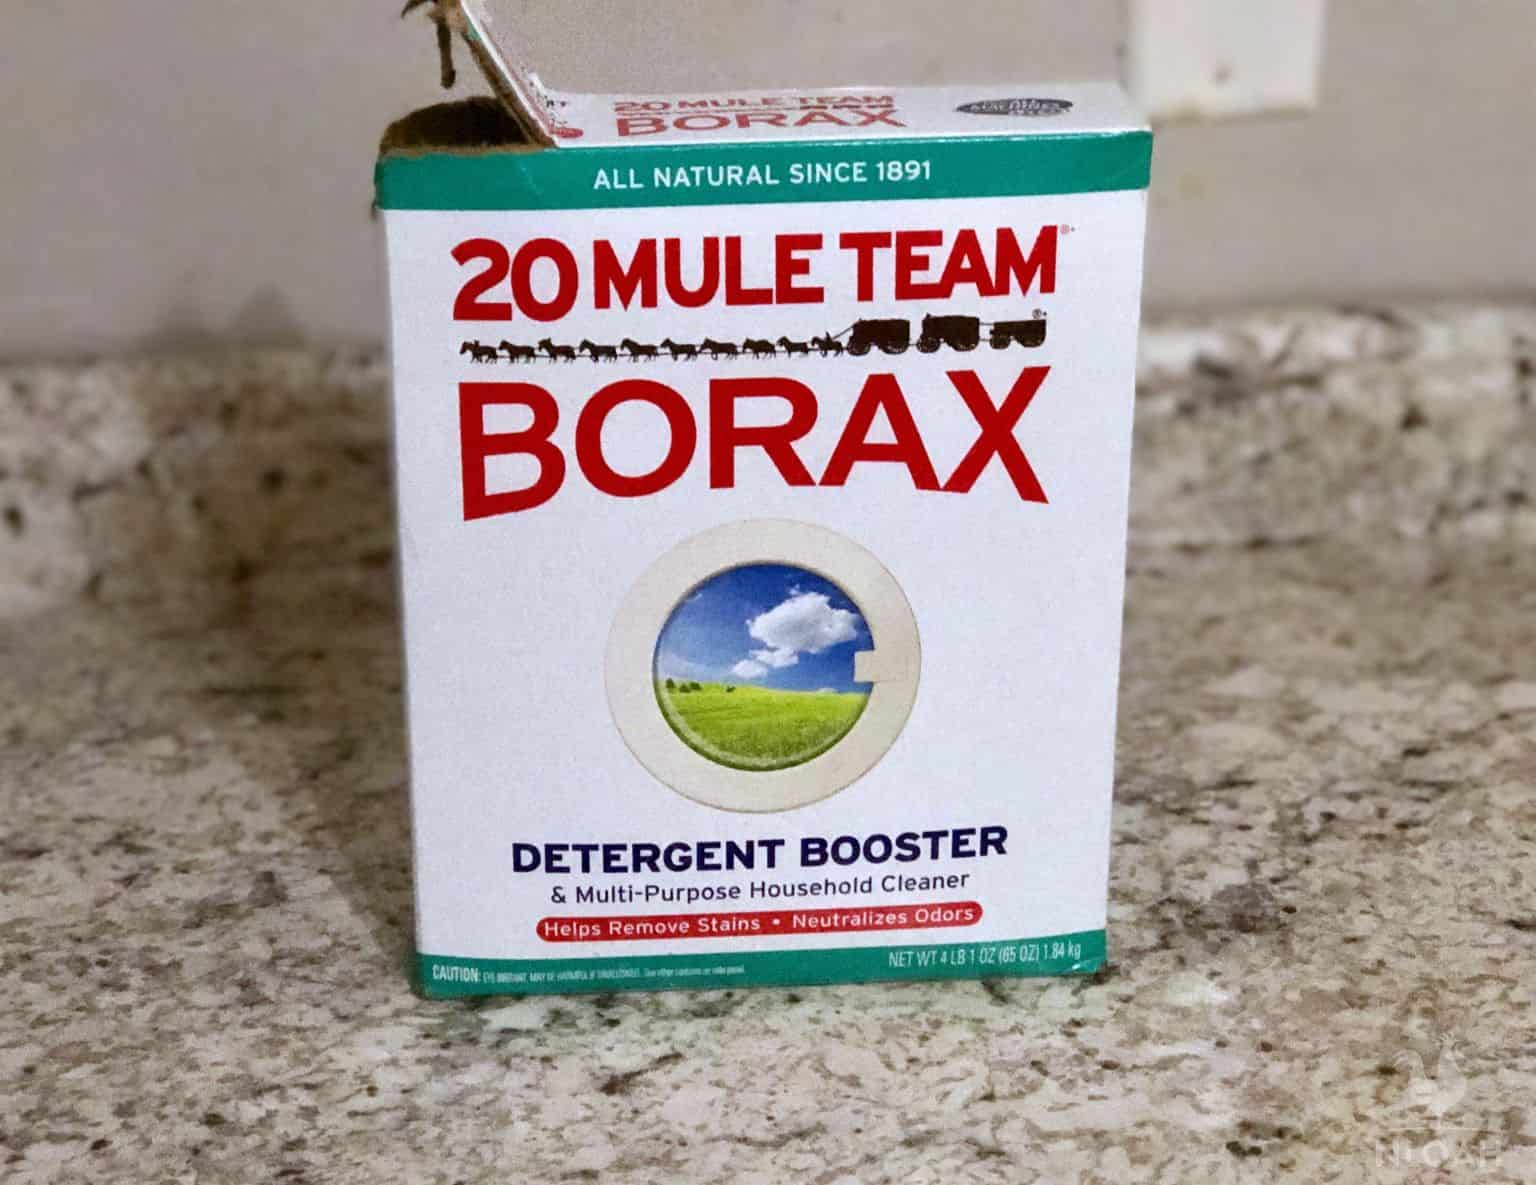 Borax box